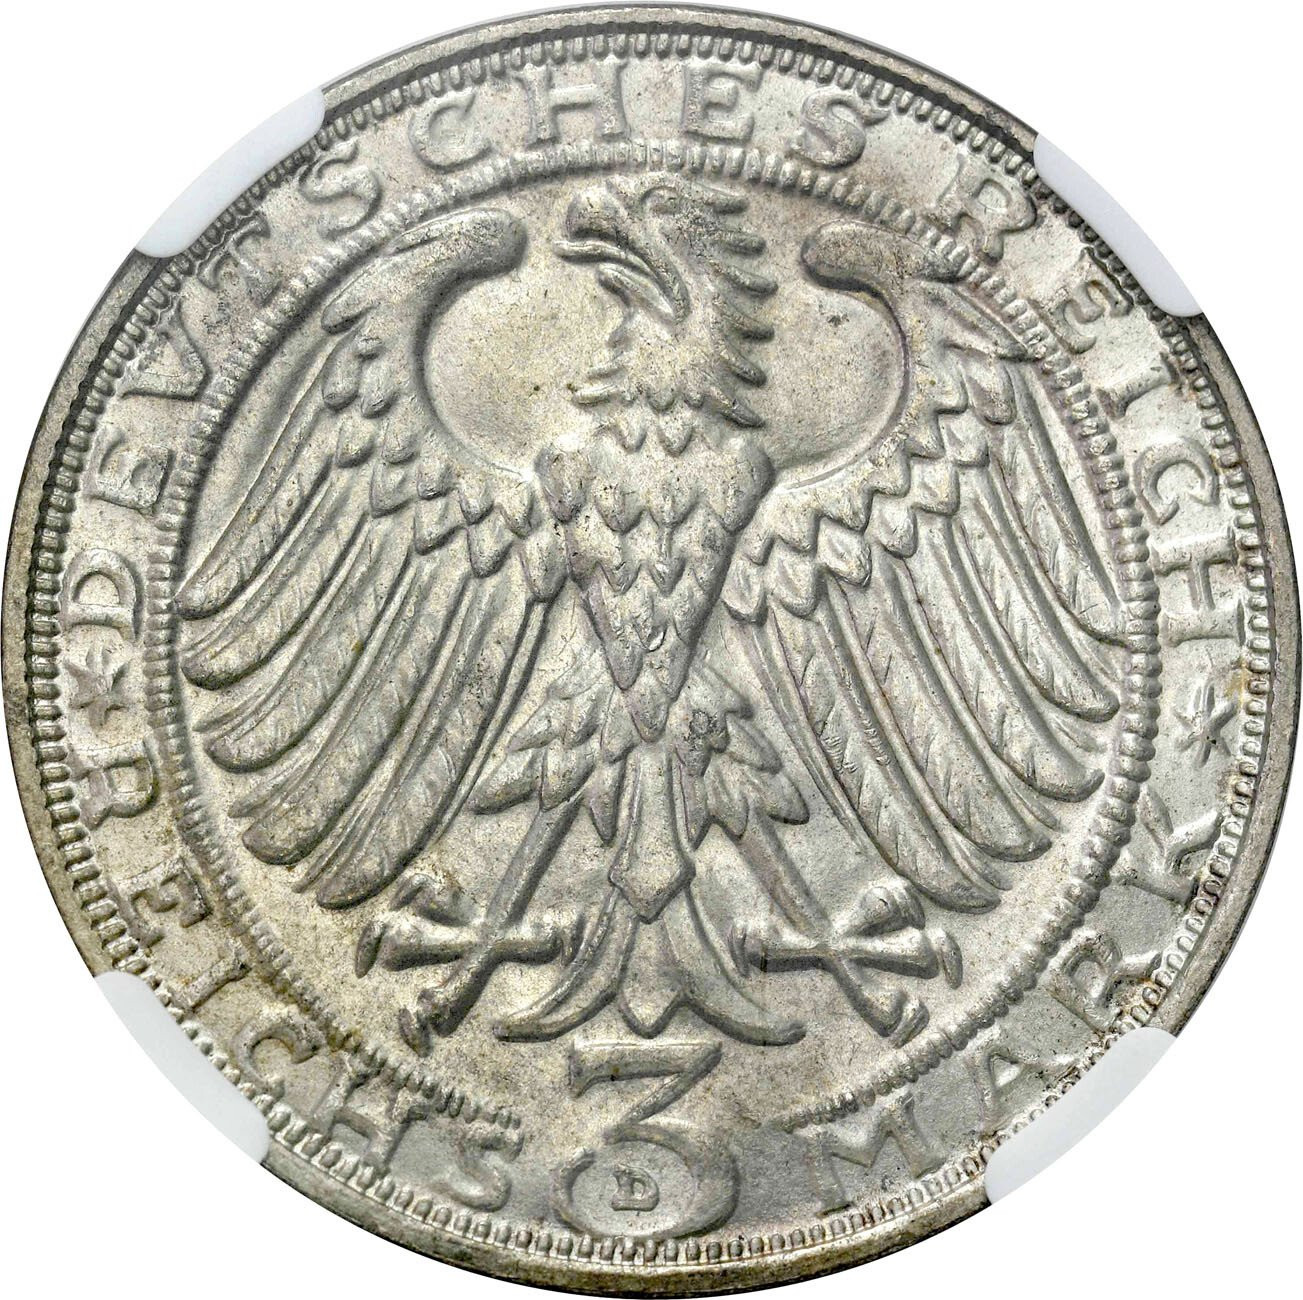 Niemcy, Weimar. 3 Marki 1928 D, Monachium NGC MS64 - PIĘKNE i RZADKIE